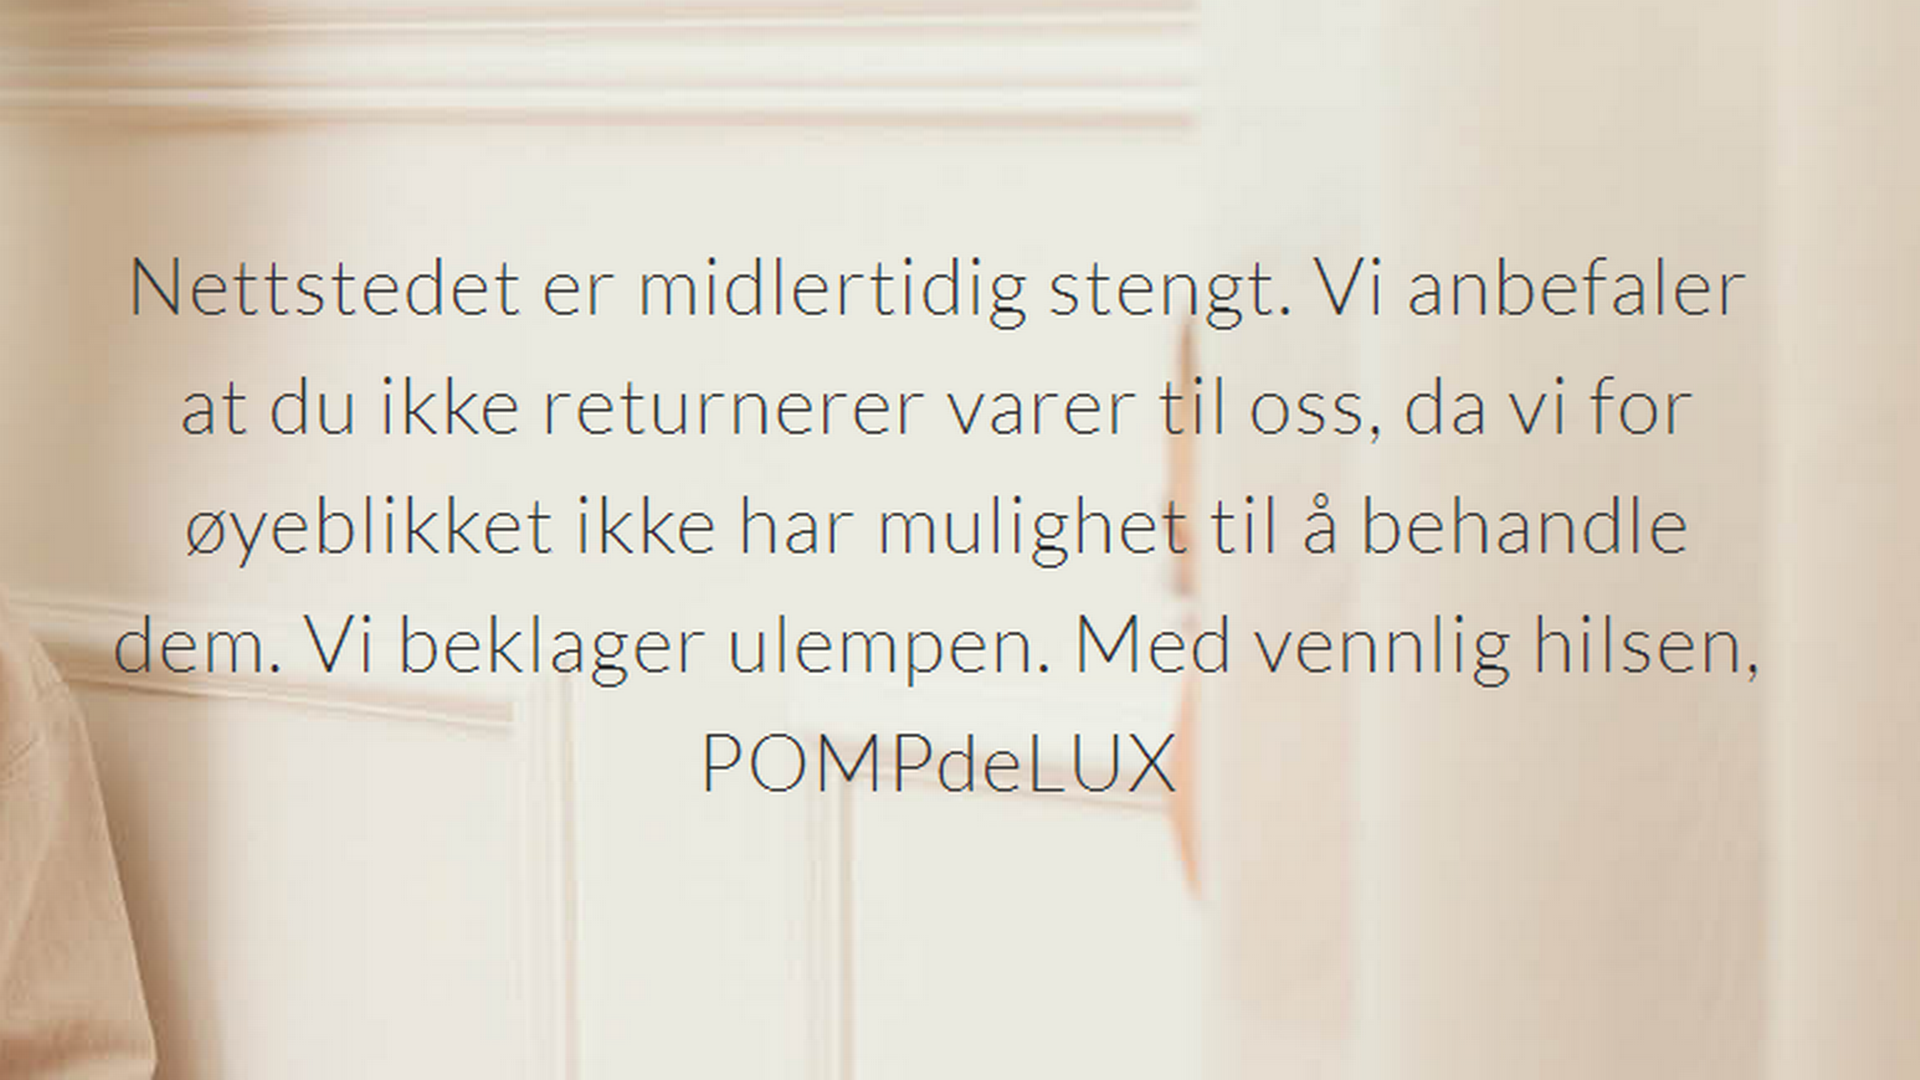 Det danske klesmerket Pompdelux har midlertidig lagt ned driften. | Foto: Skjermdump Pompdelux